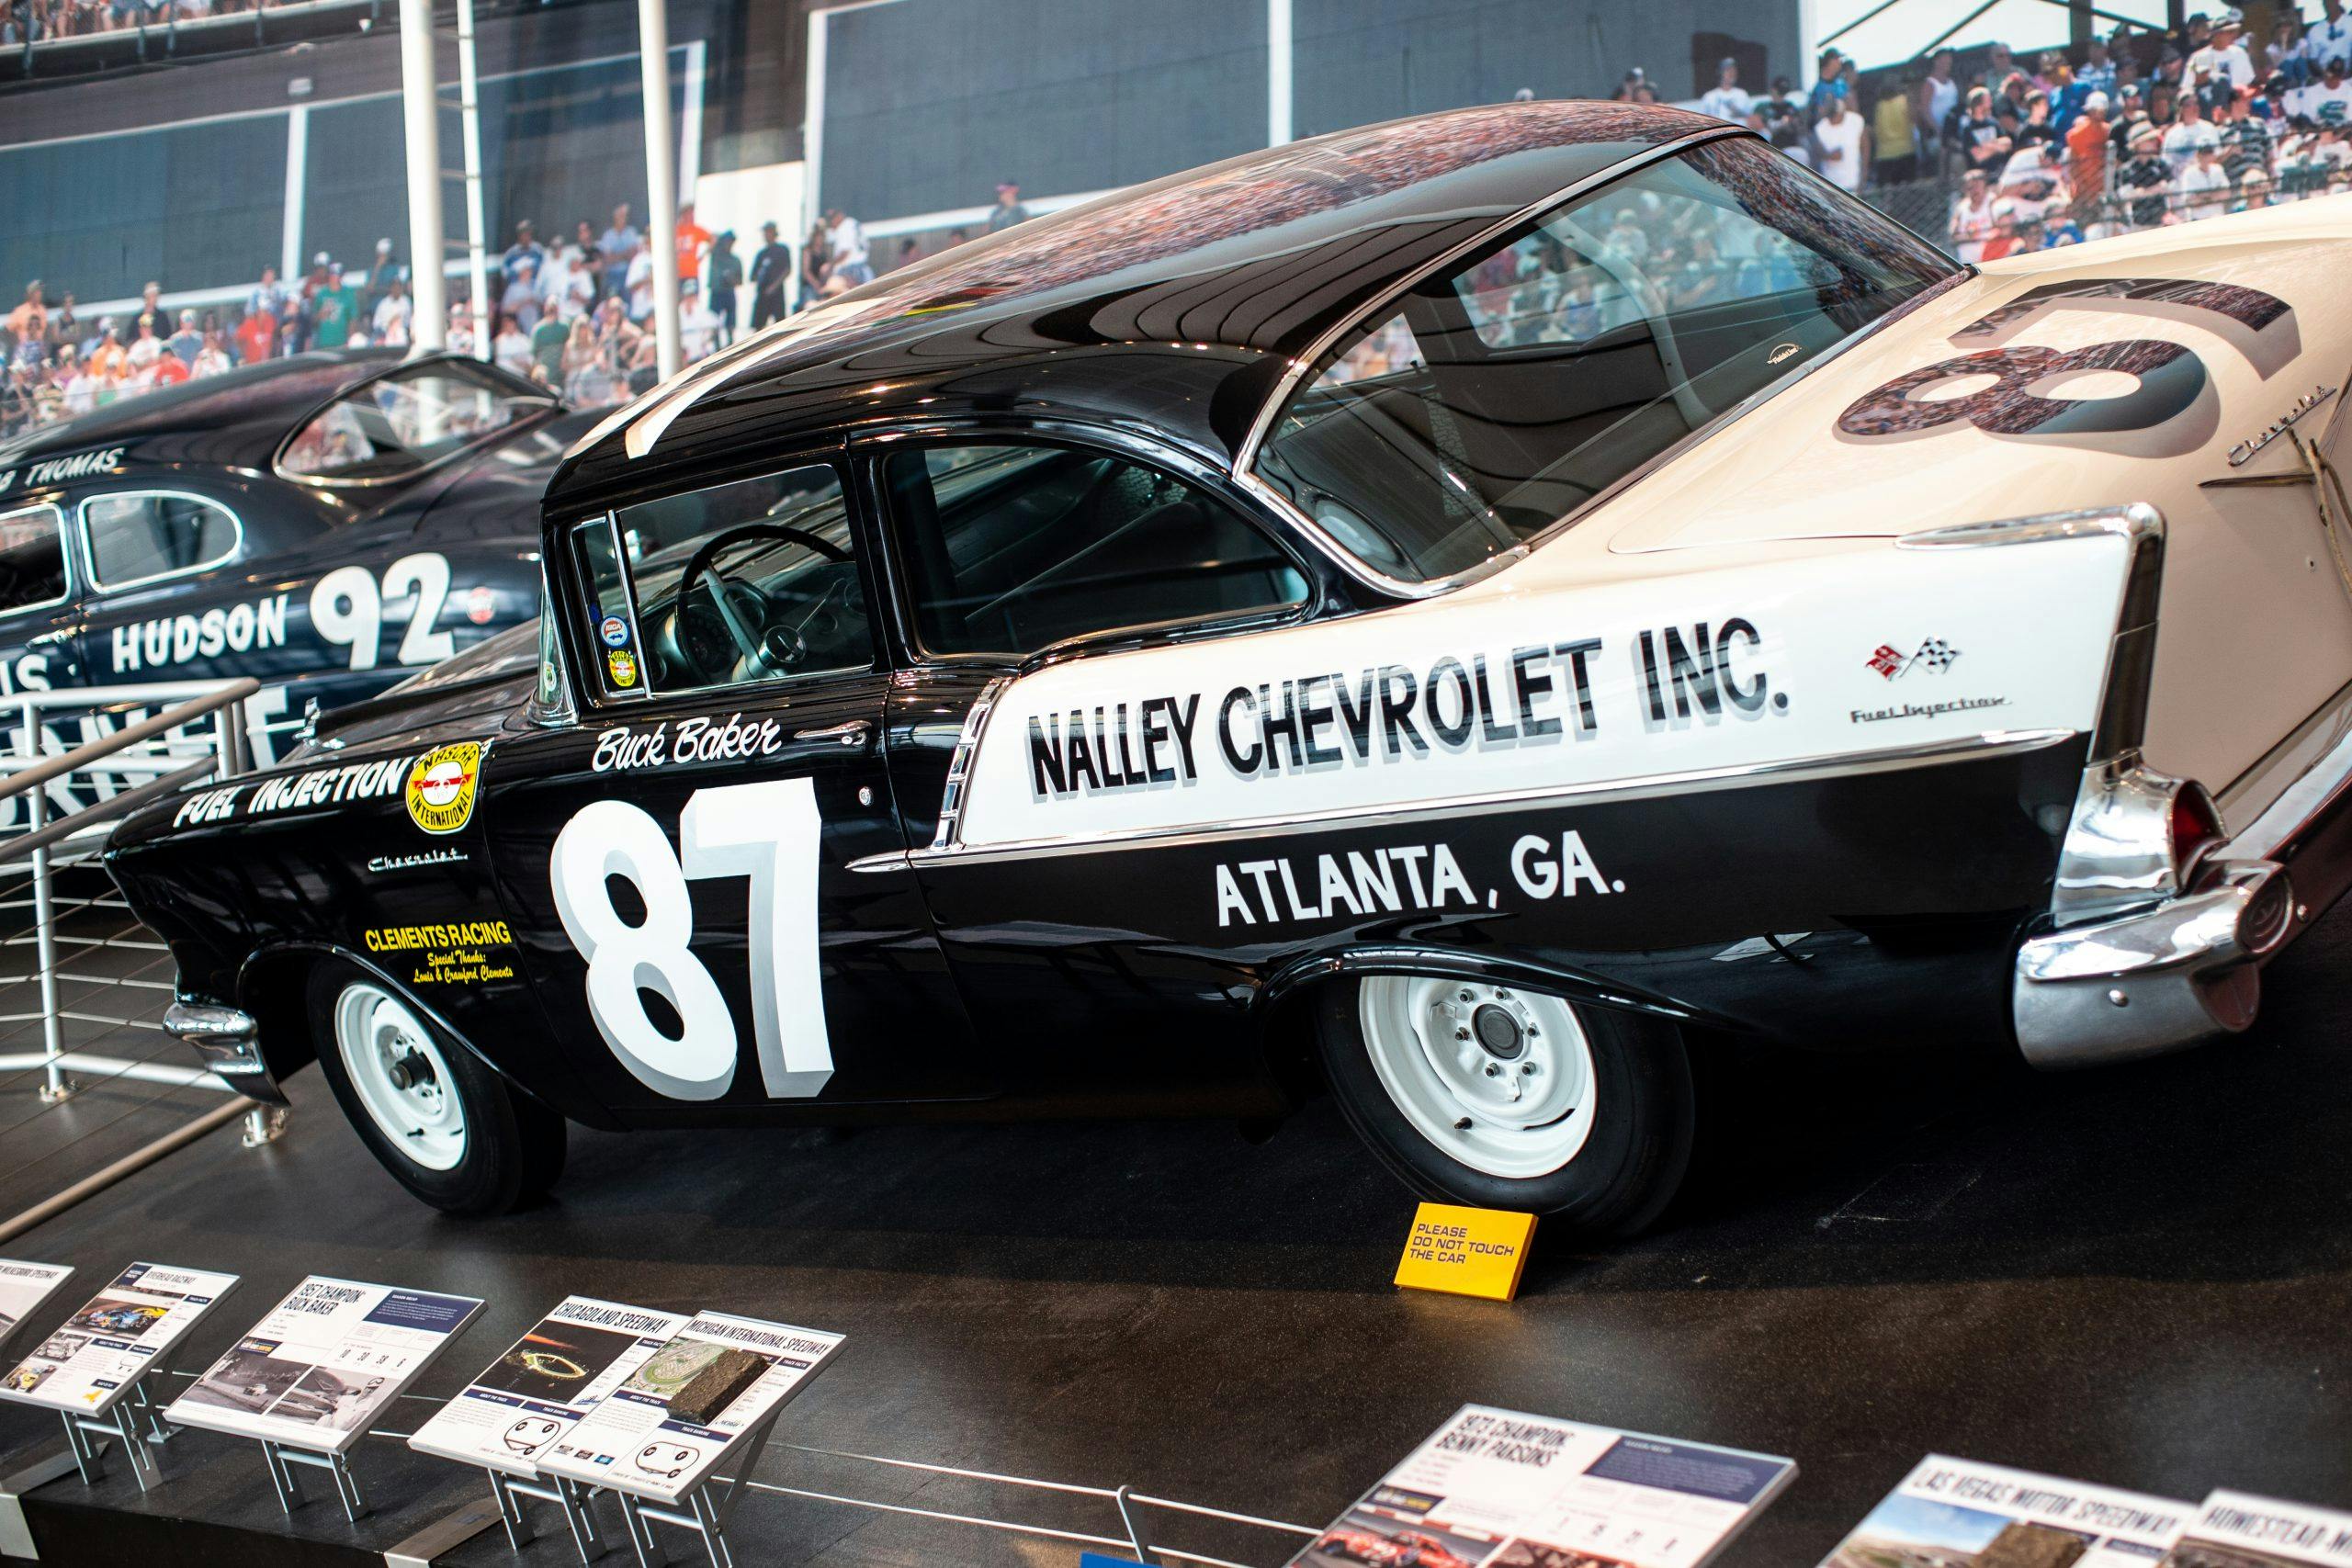 NASCAR Hall of Fame Buck Baker Chevrolet race car